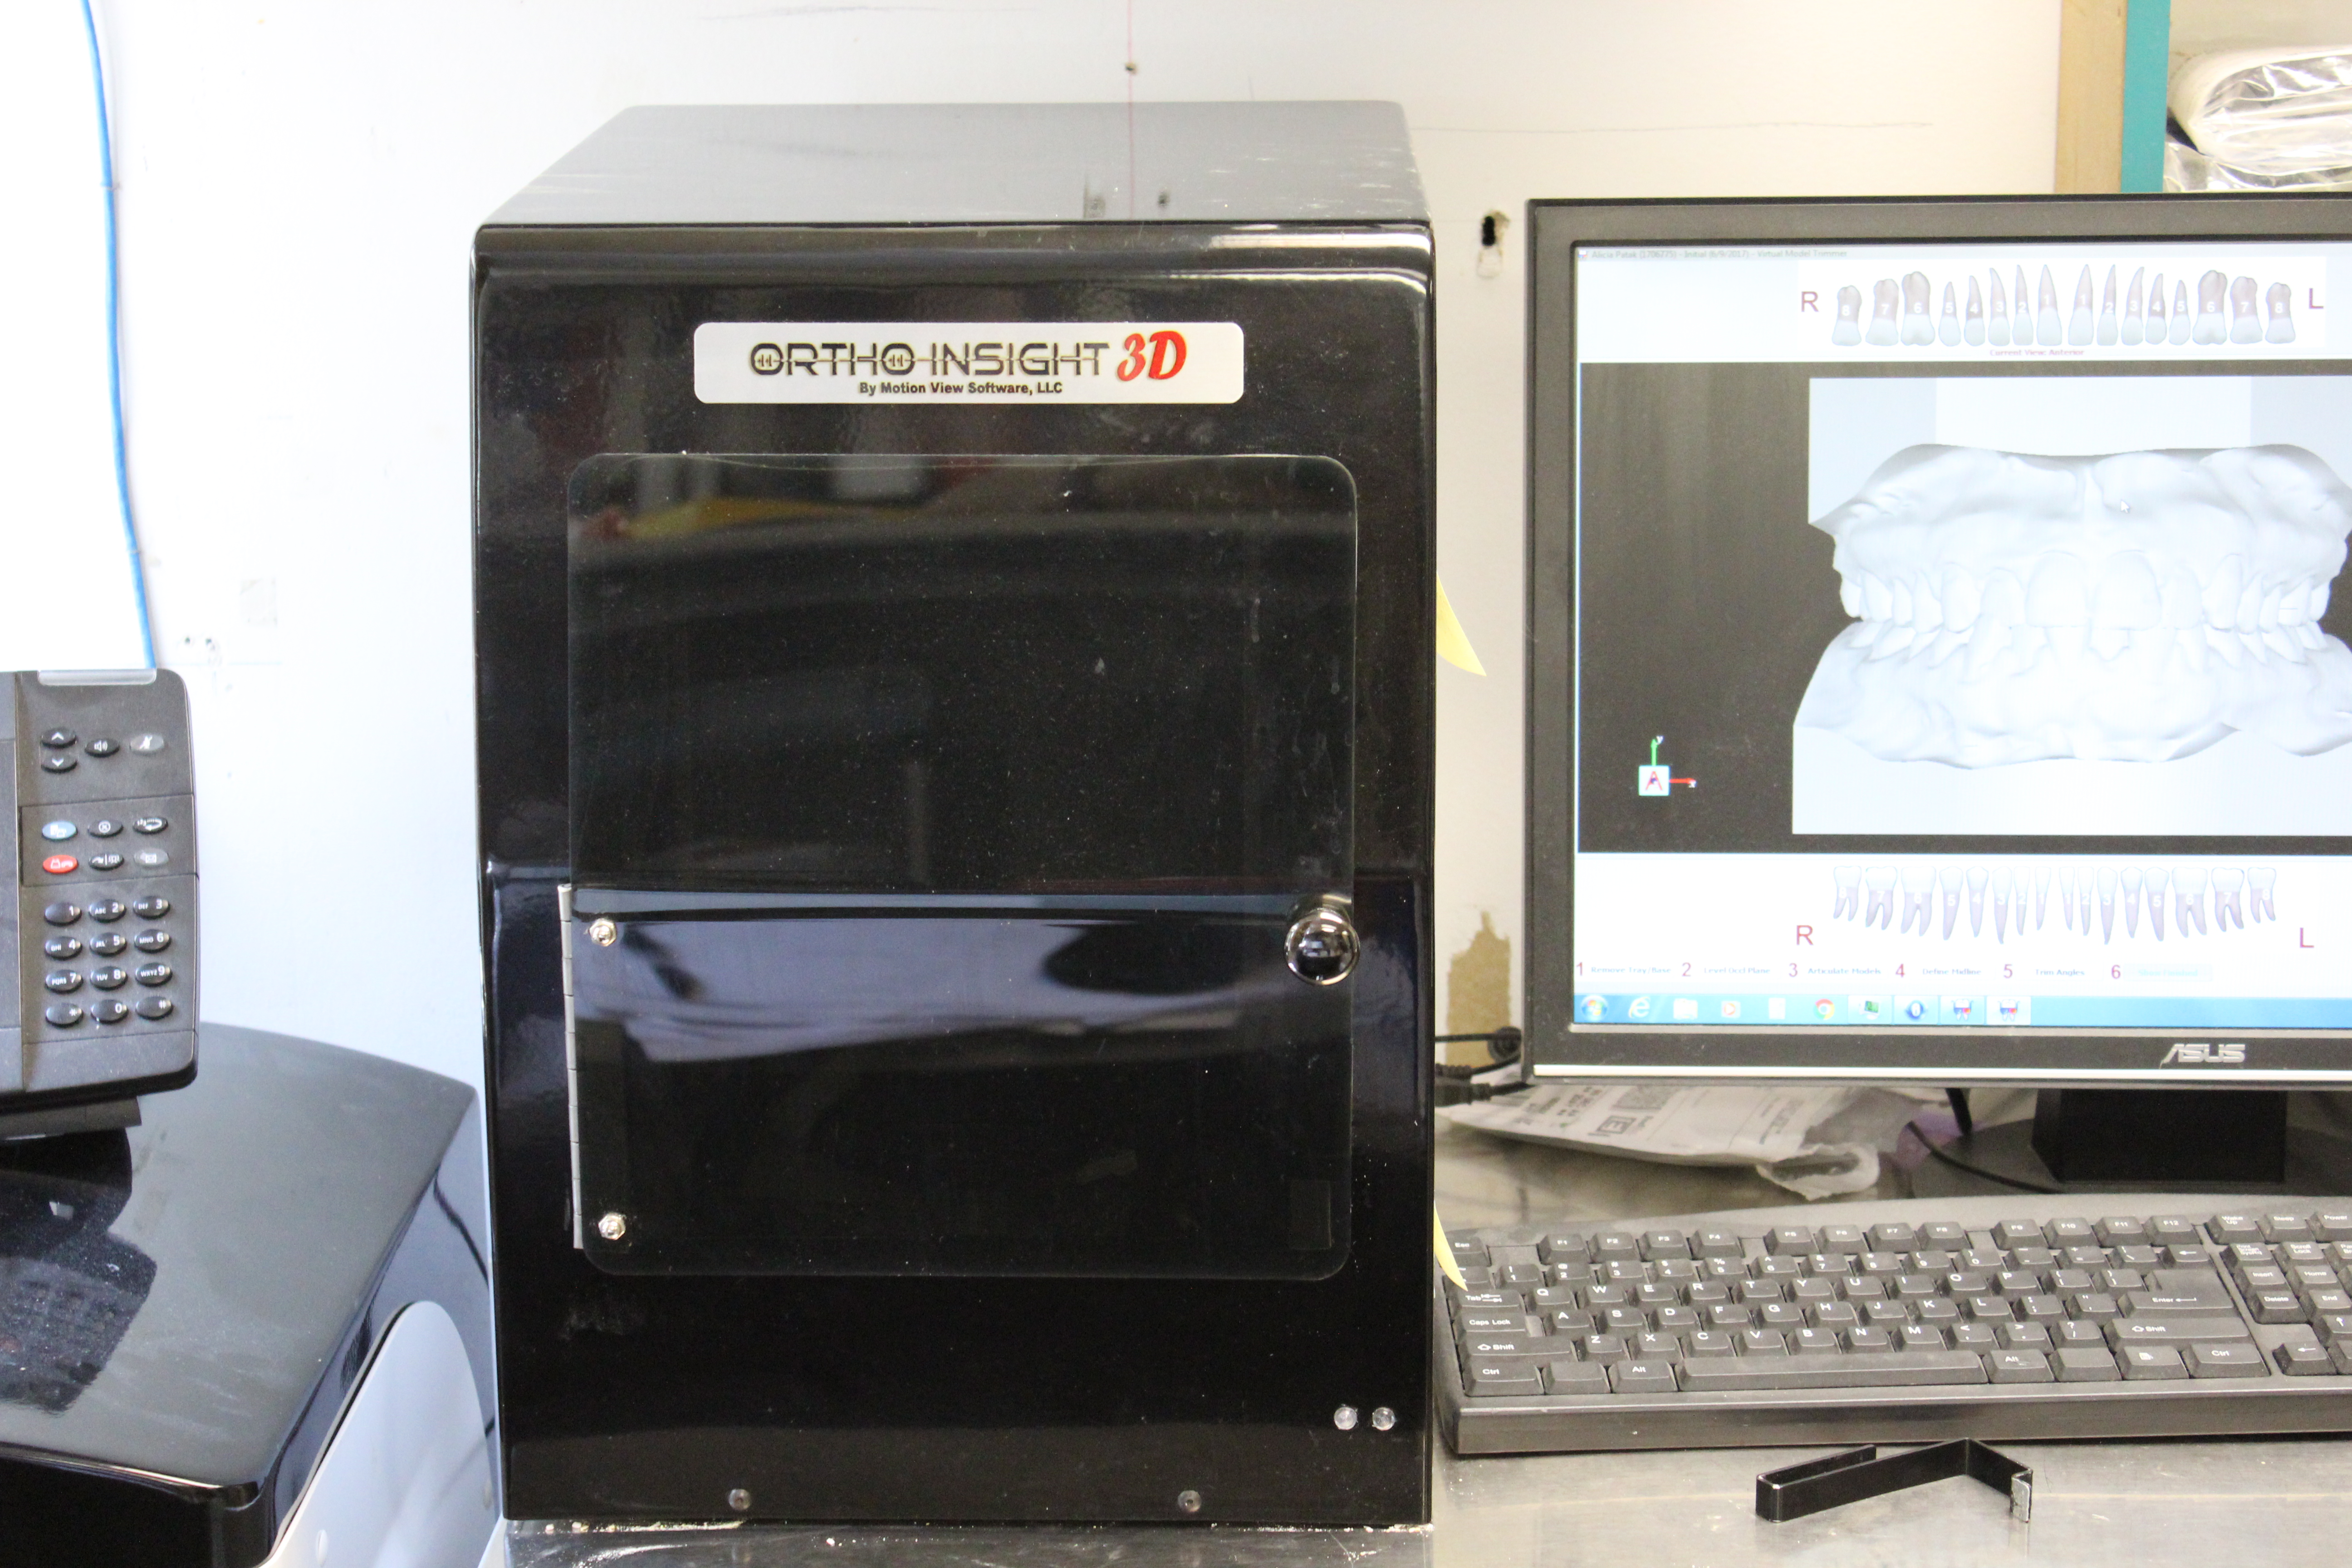 Ortho Insight 3D model scanner. Makes digital models from patients impression or dental cast